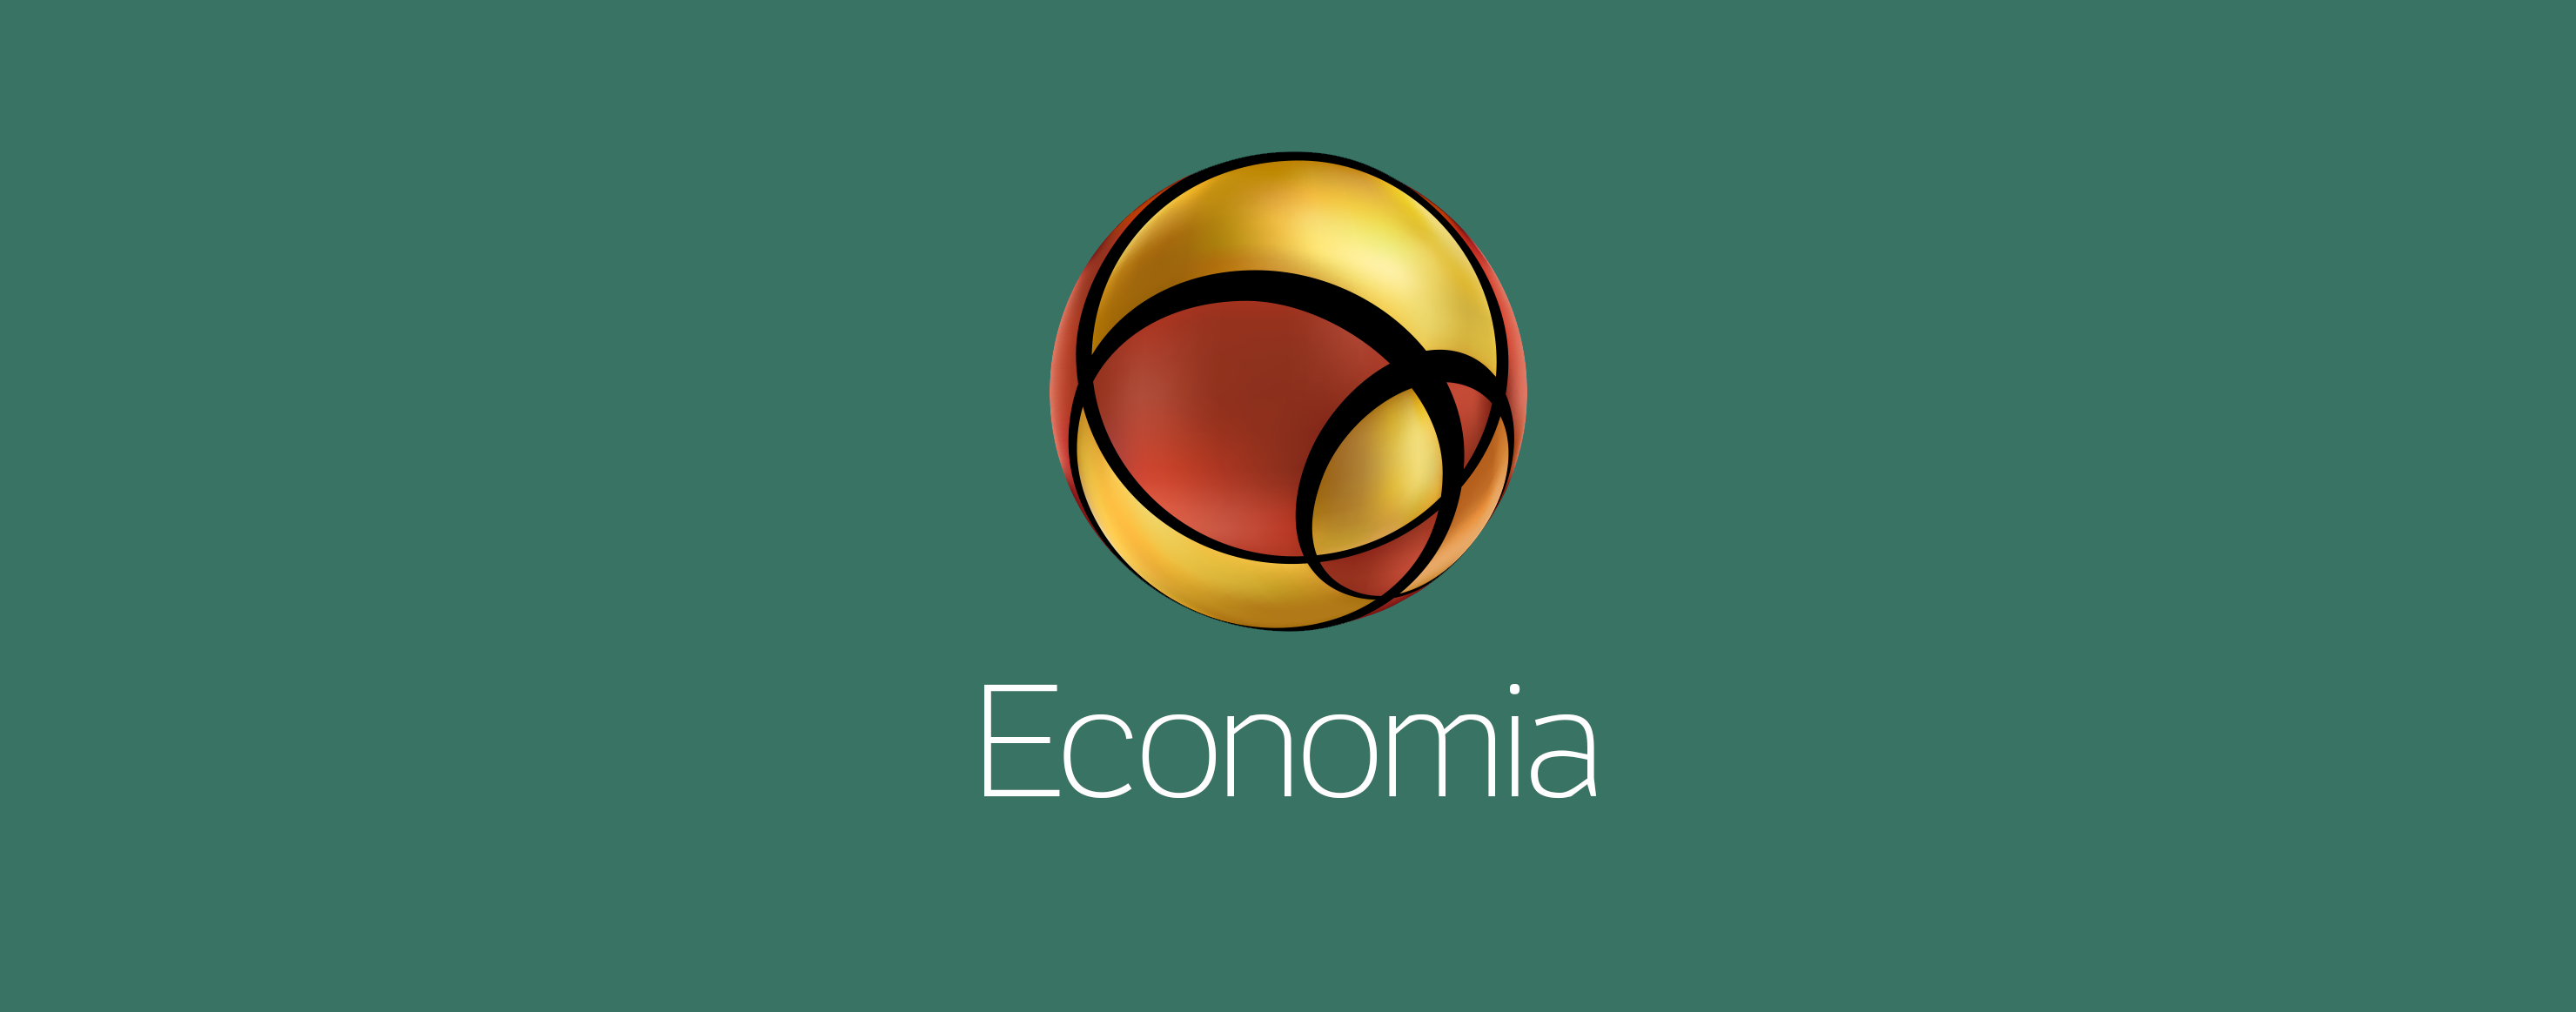 View UOL Economia: encontre orientações e notícias sobre economia outages and uptime